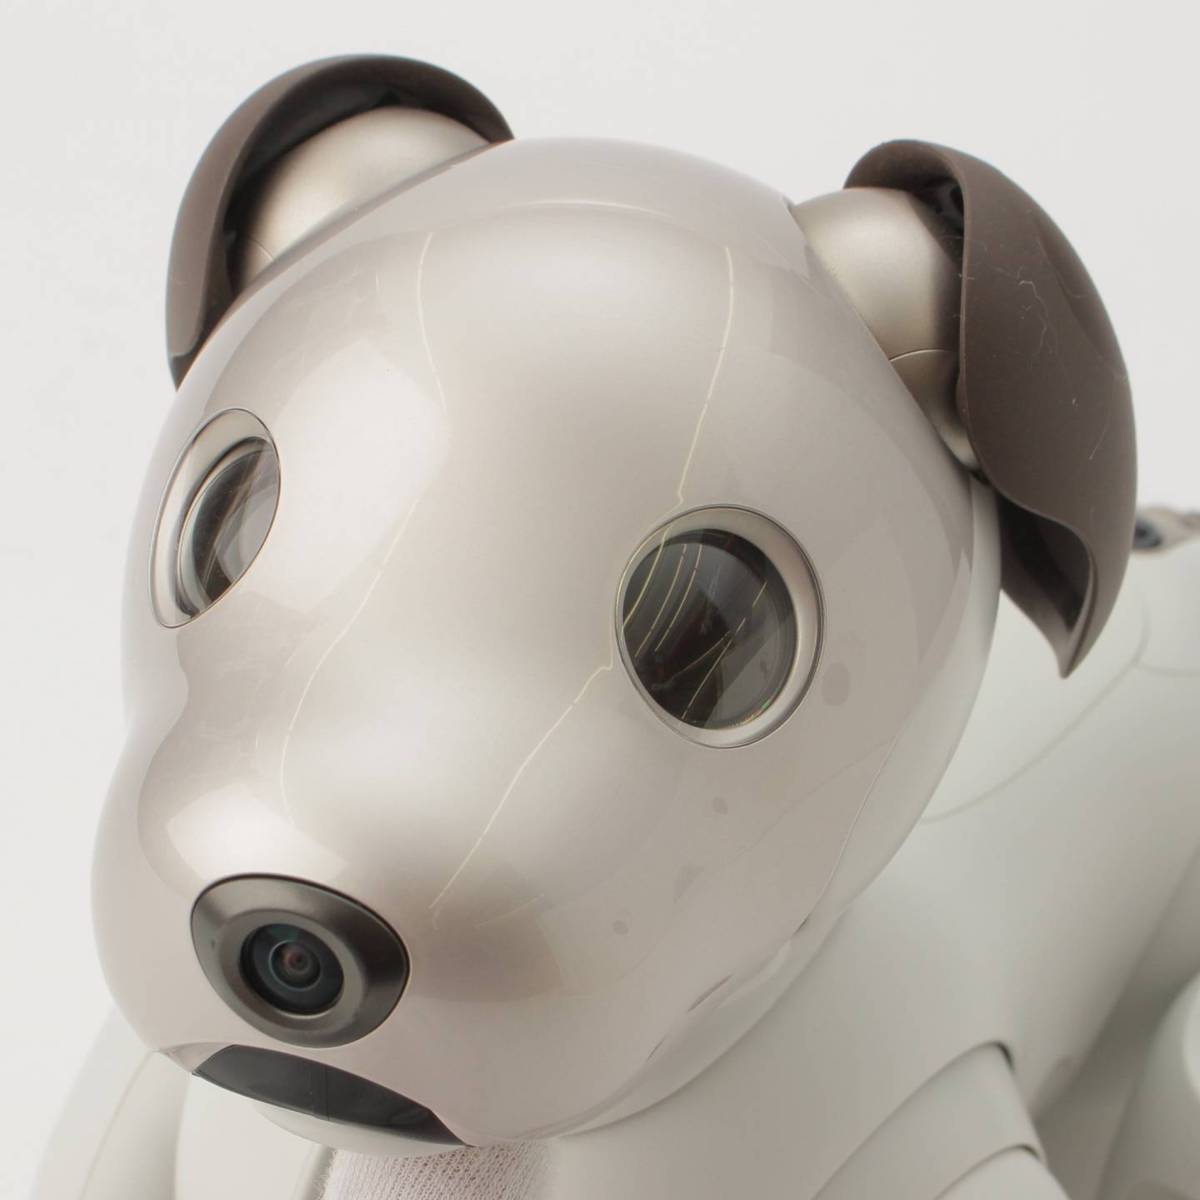 ほっこアイボ←アイボ一覧ソニー アイボ ERS-1000 アイボーン セットAIBO 犬型 ロボット